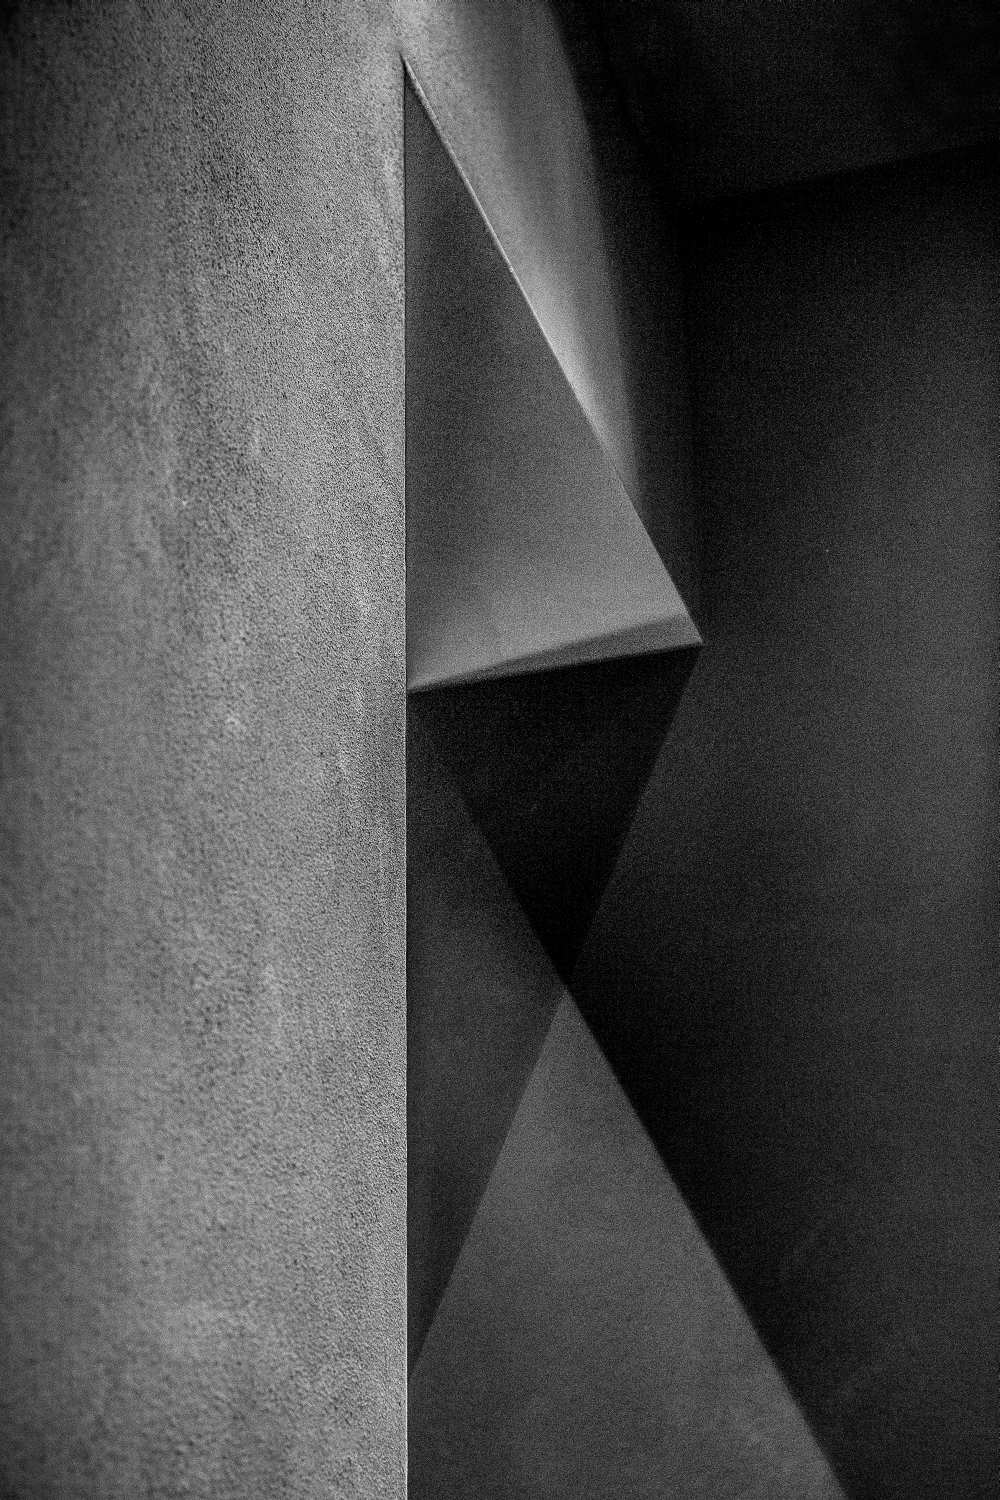 Grey shadows von Inge Schuster